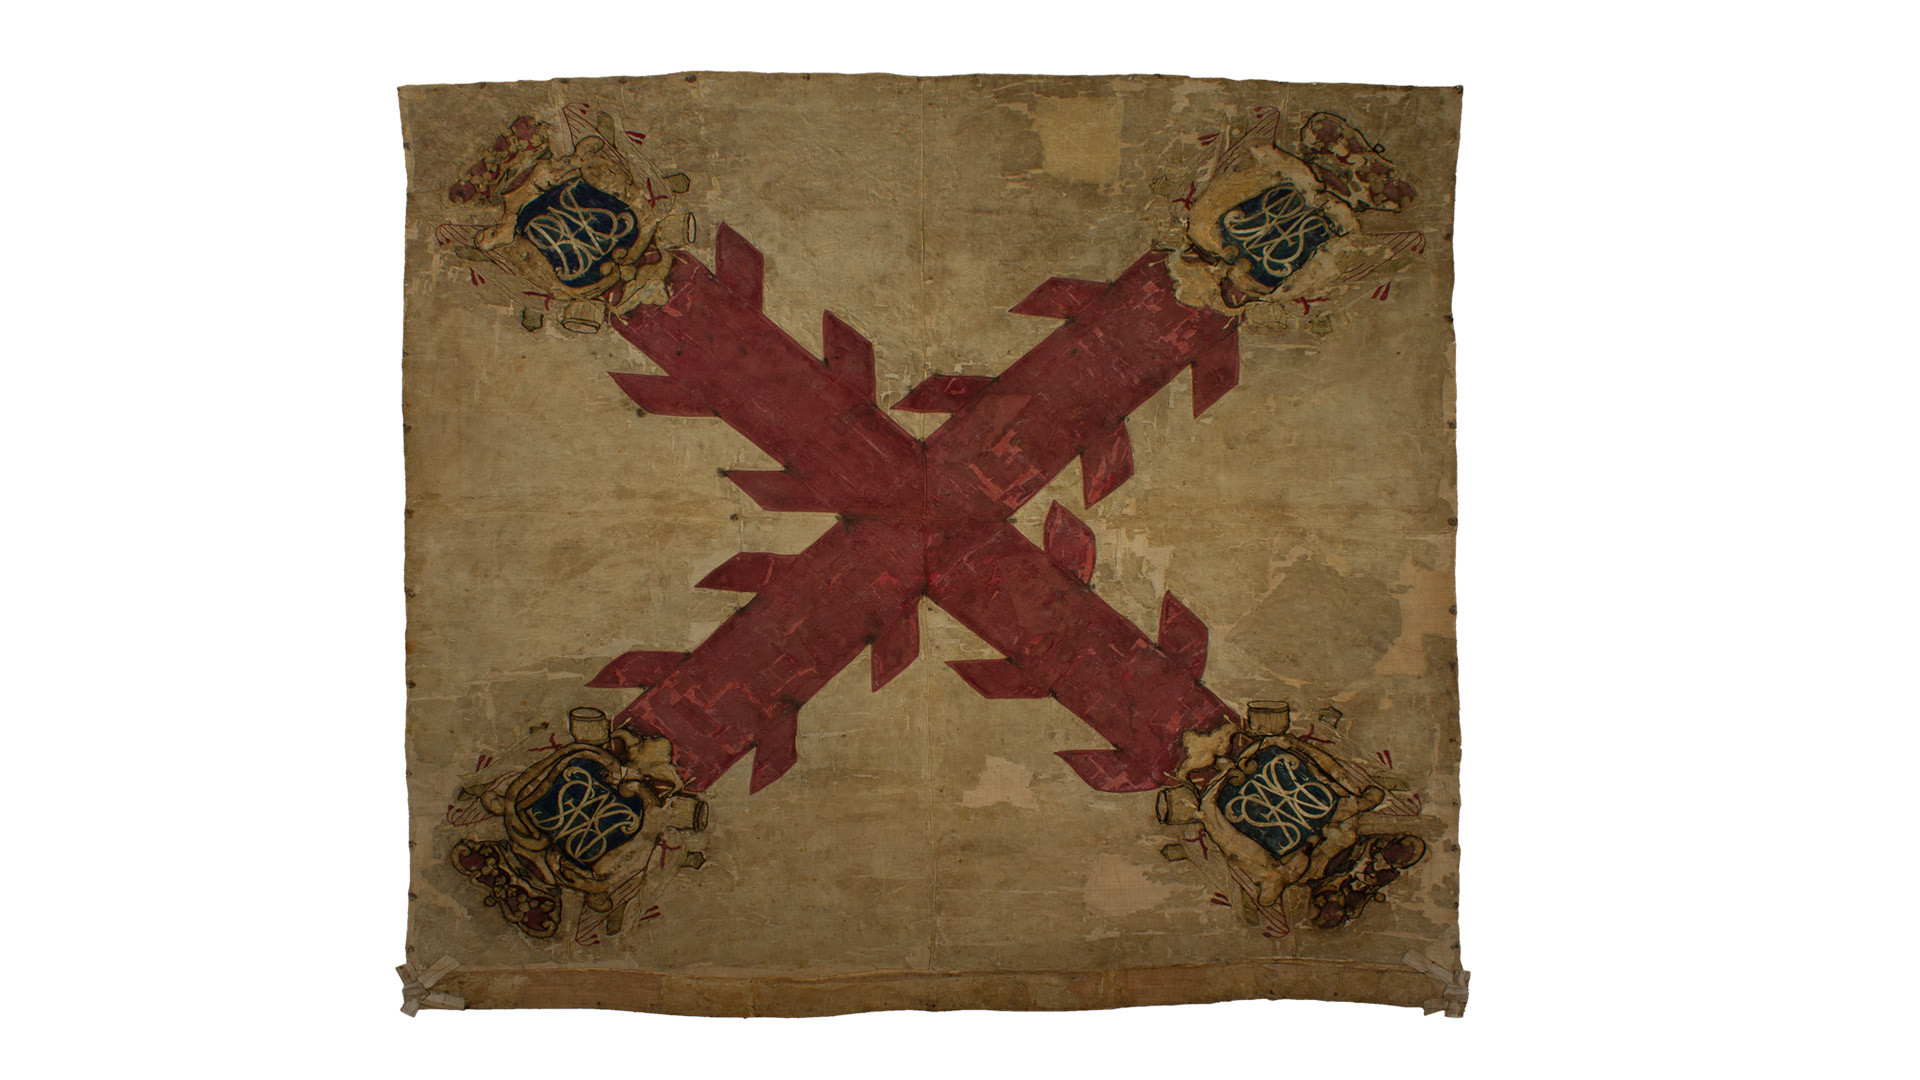 Bandera del Batallón Fernando VII en tafetán de seda y bordados. En el centro se observa una cruz roja con aspas en los brazos de la misma. Cada vértice rematado con un escudo con letras bordadas.